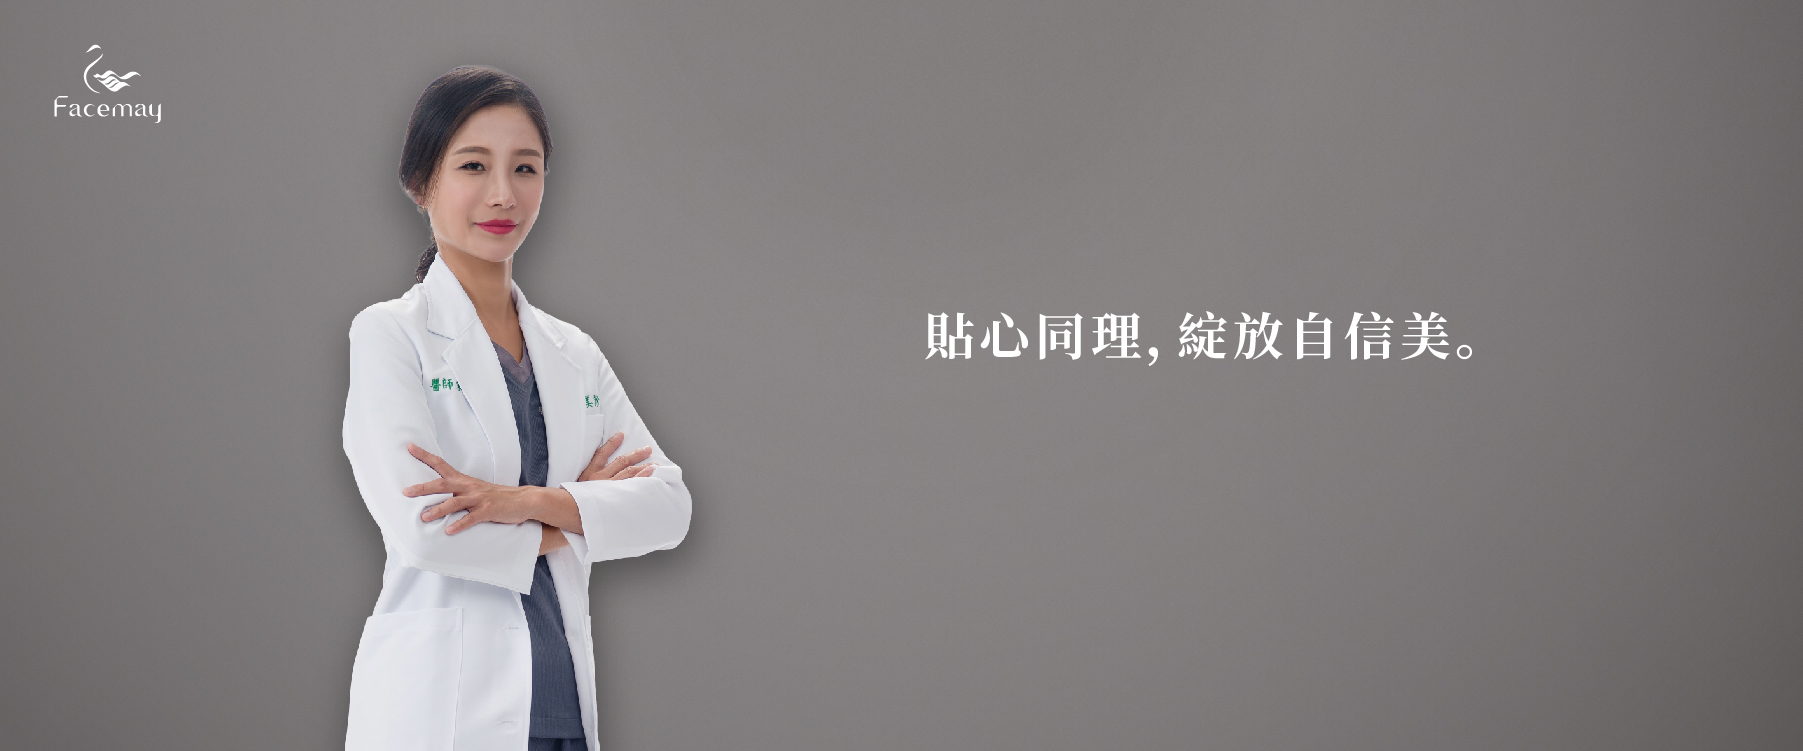 台中菲仕美整形外科診所醫師團隊朱純慧醫師